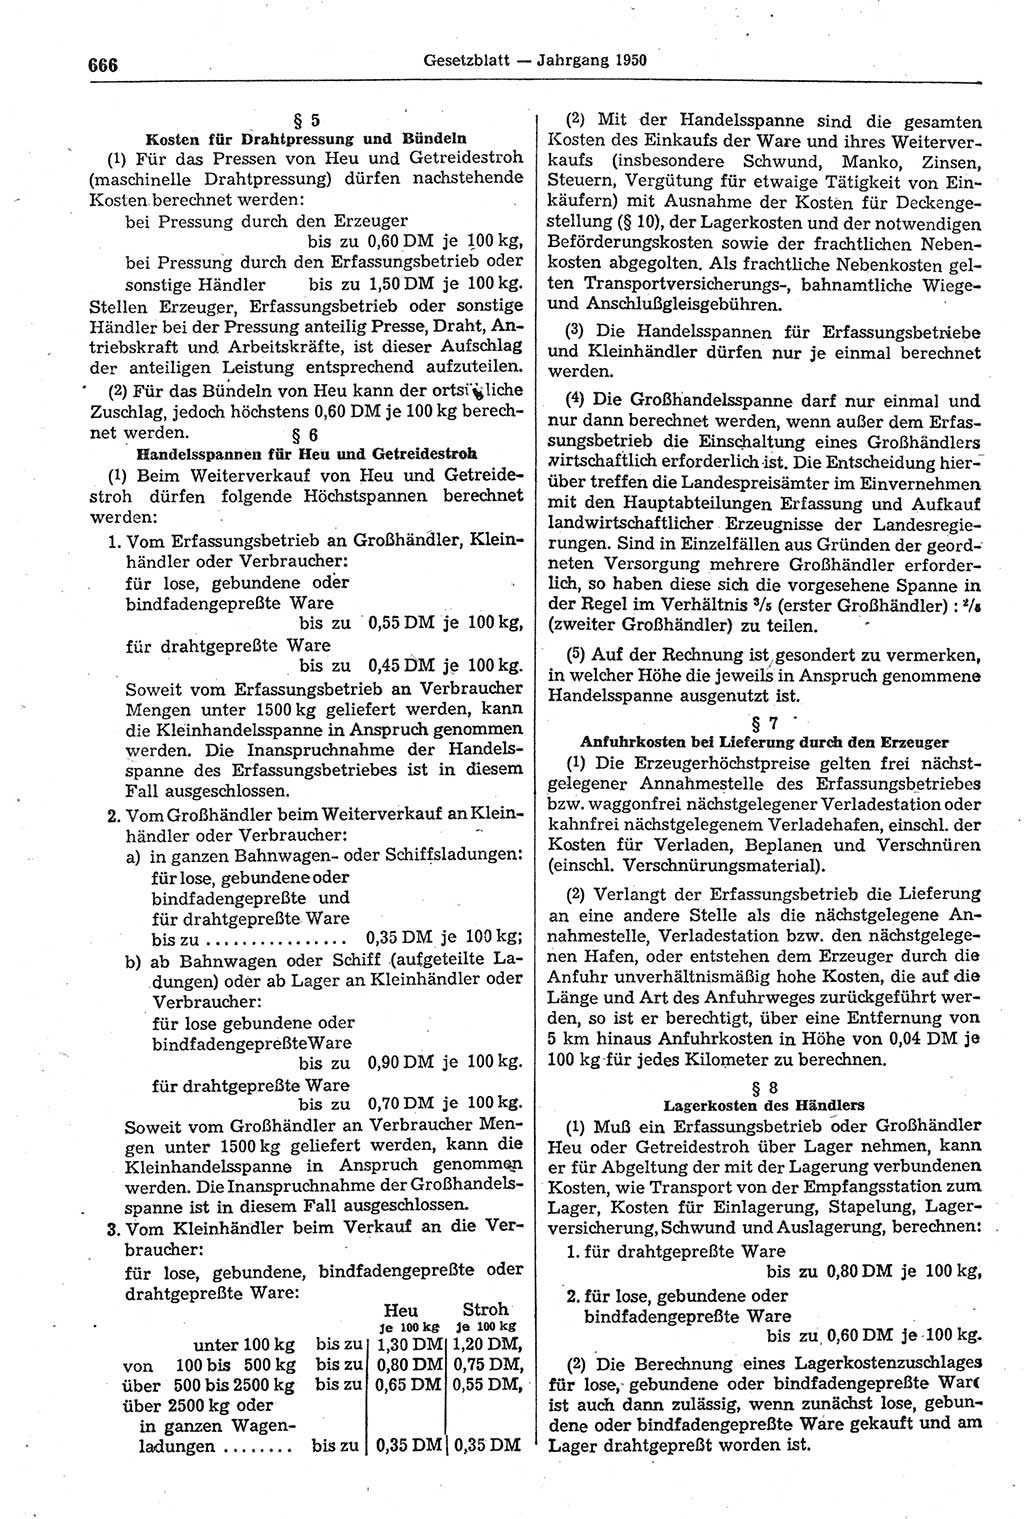 Gesetzblatt (GBl.) der Deutschen Demokratischen Republik (DDR) 1950, Seite 666 (GBl. DDR 1950, S. 666)